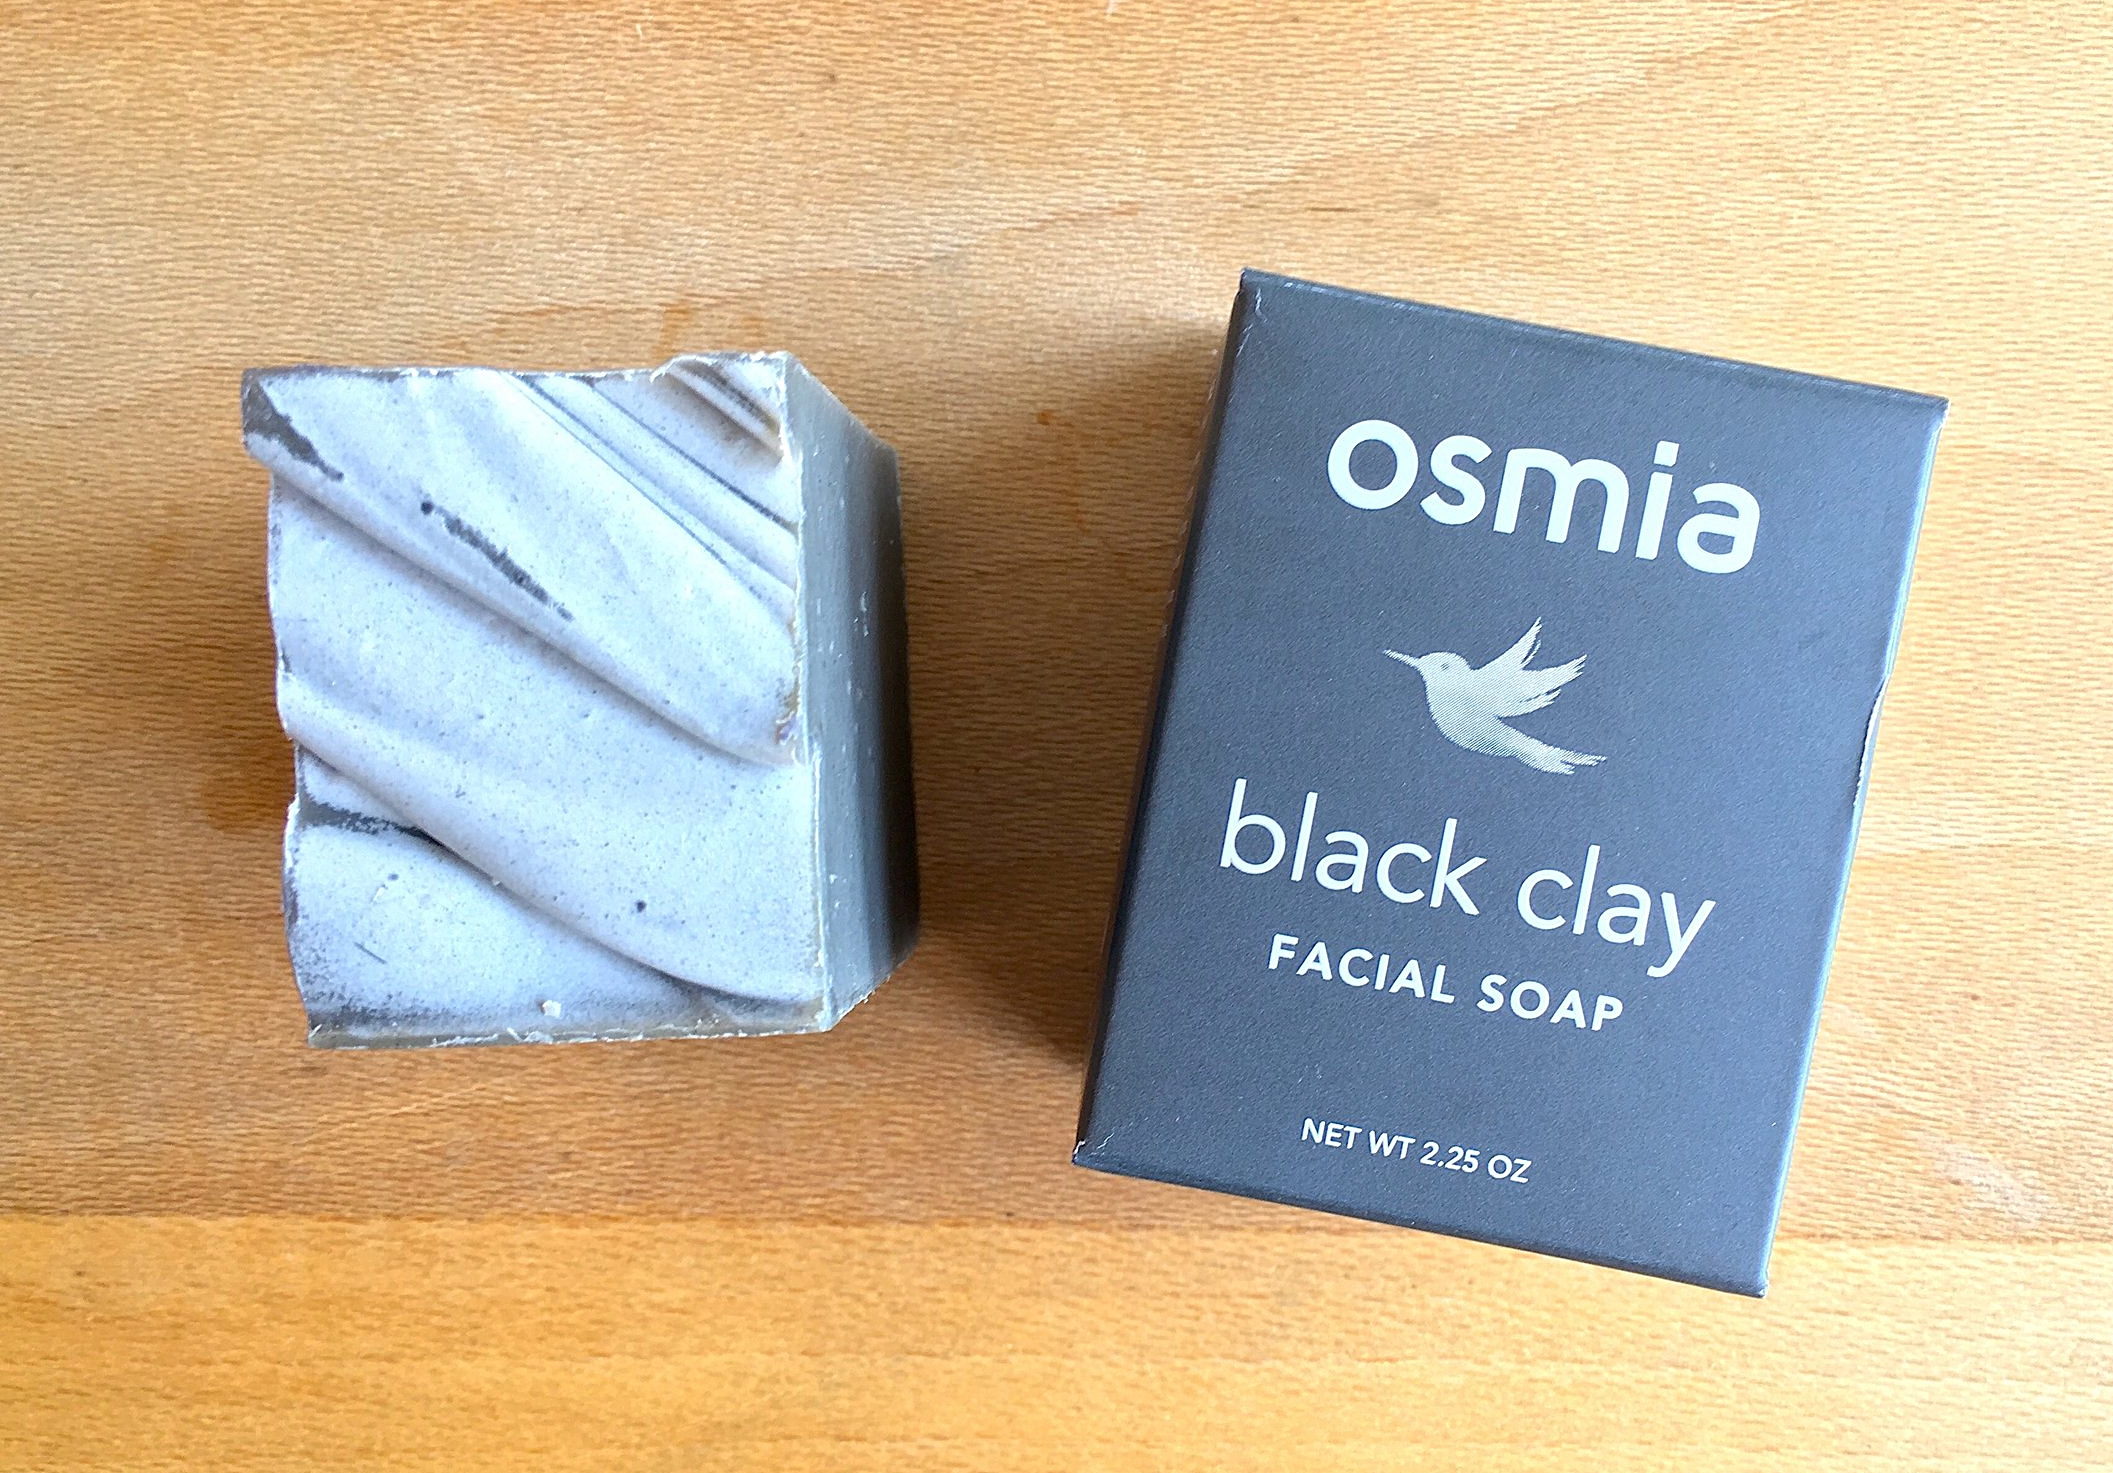 Osmia Soap Saver